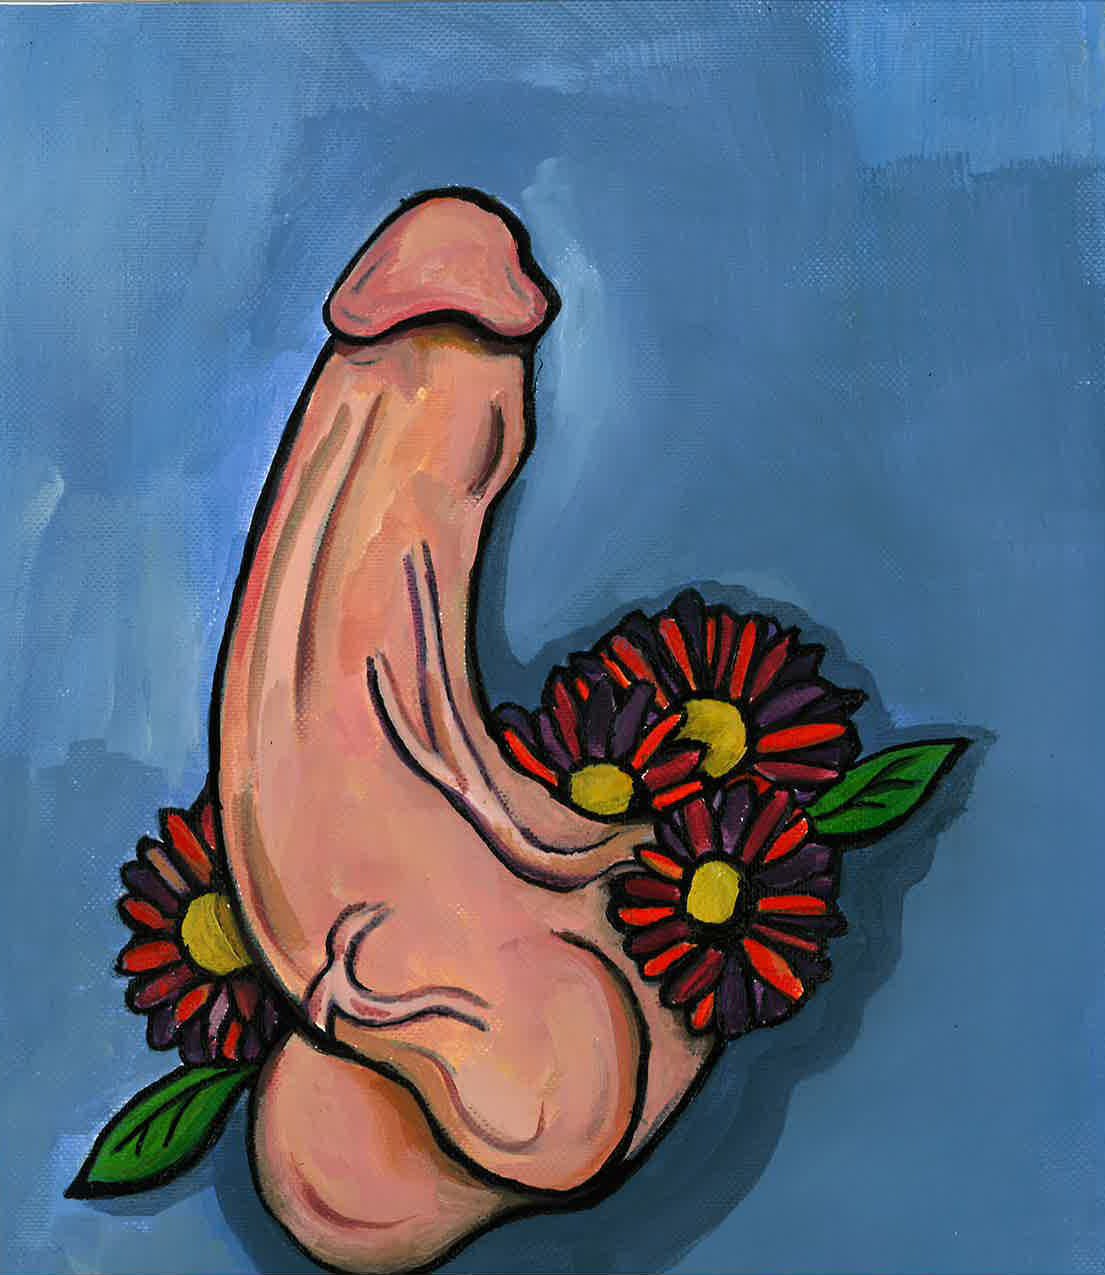 Dick Flower, for C. 